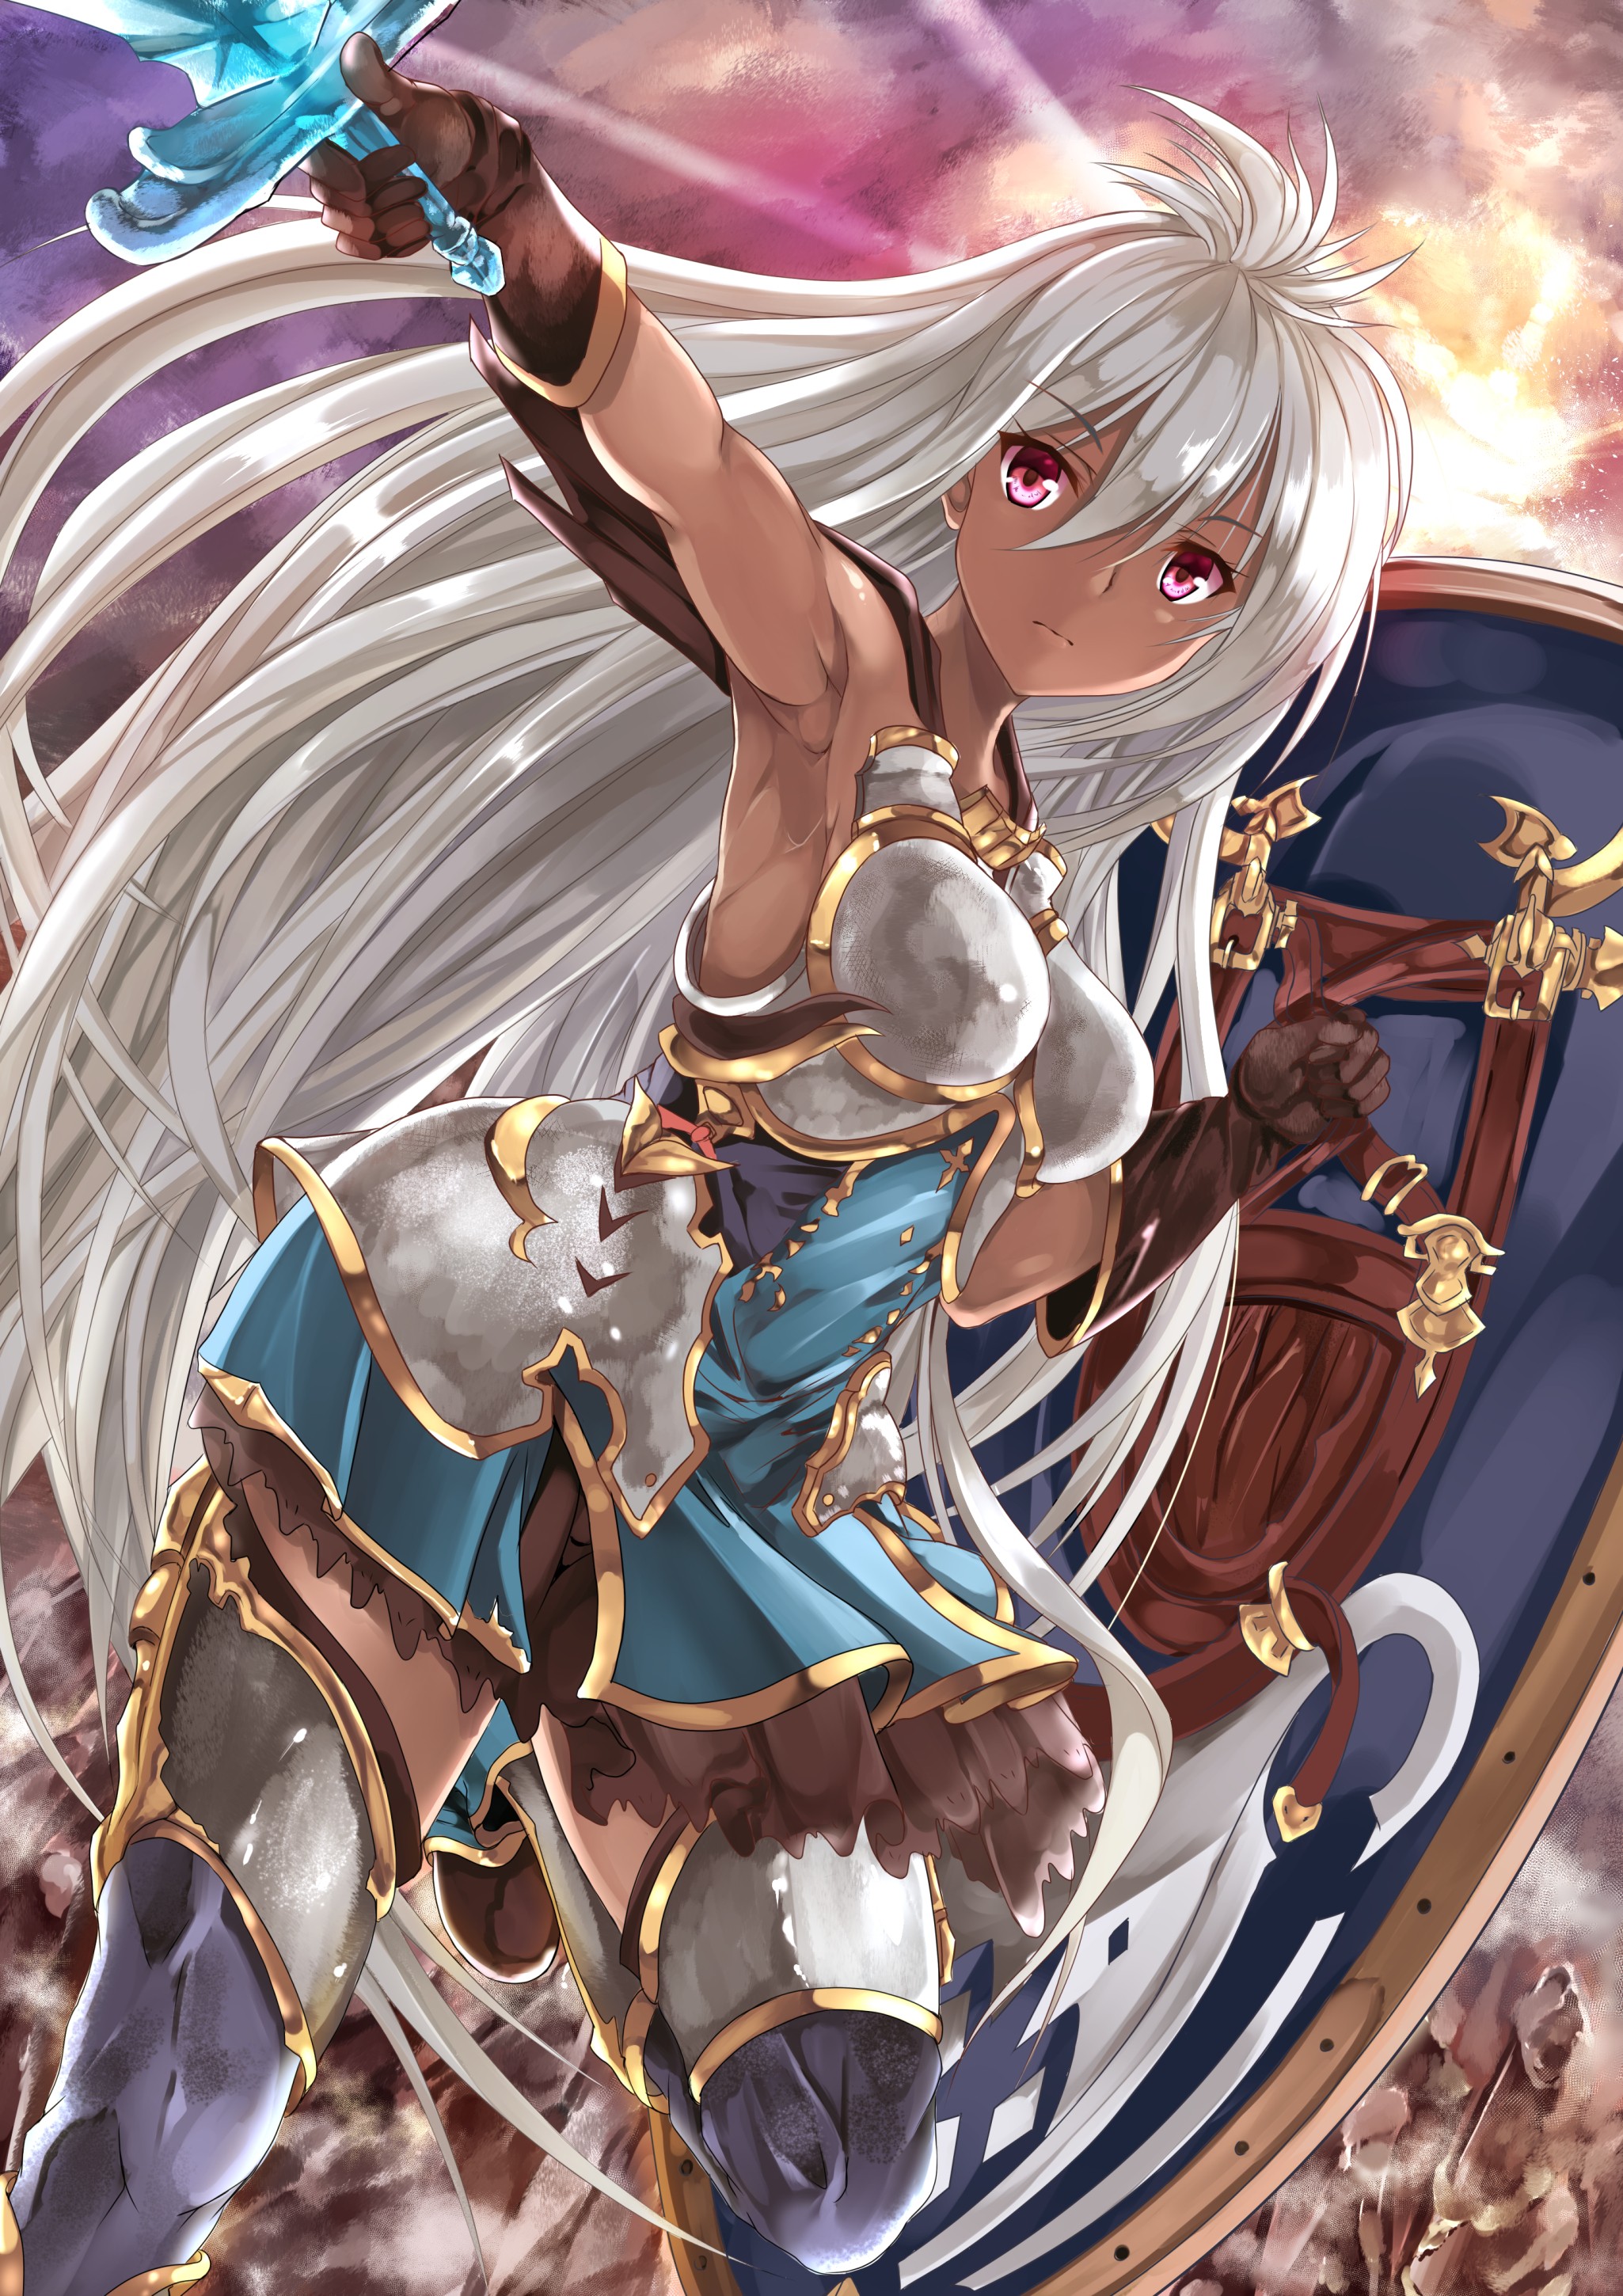 Anime 2050x2900 anime anime girls Granblue Fantasy armor sword weapon long hair white hair Pixiv fantasy art fantasy girl women with swords